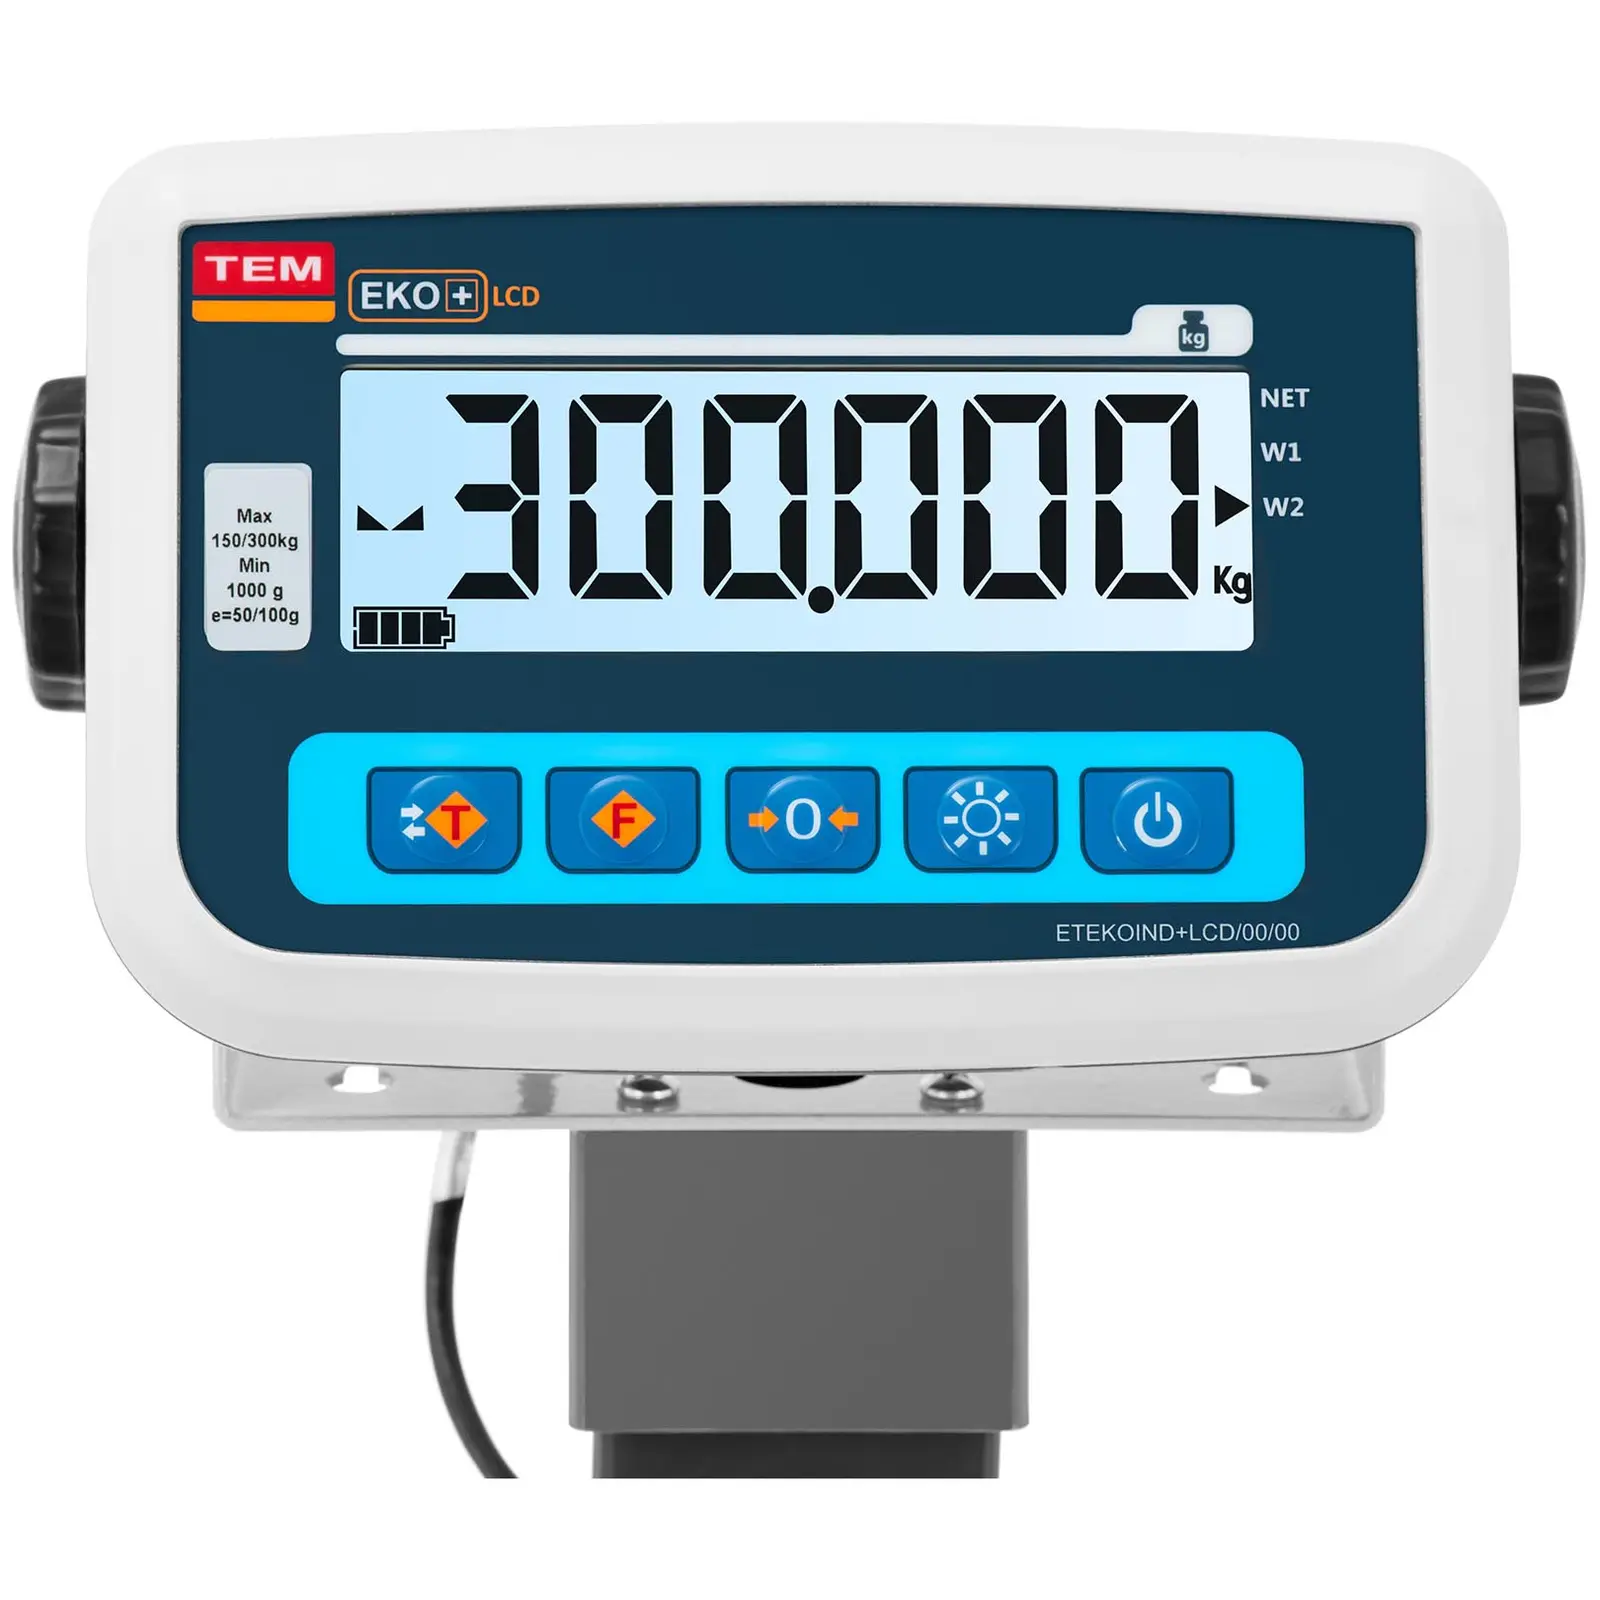  Bilancia per animali  - Tarata - 500 kg / 100 g - Con grata - LCD